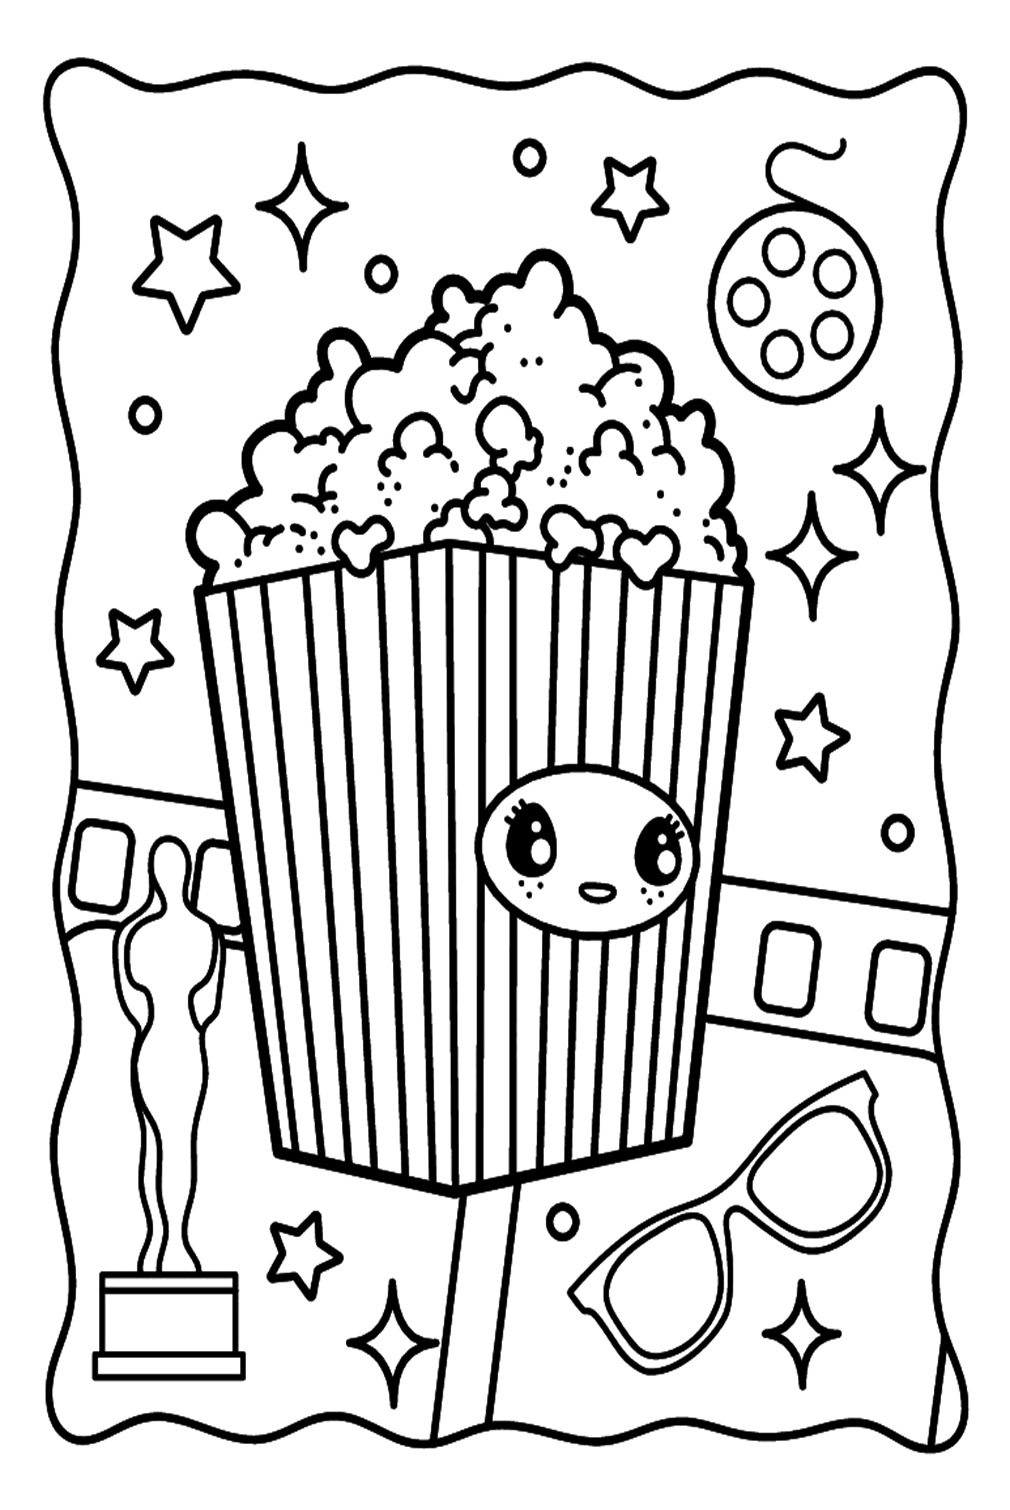 Simpatica pagina da colorare di popcorn da Popcorn